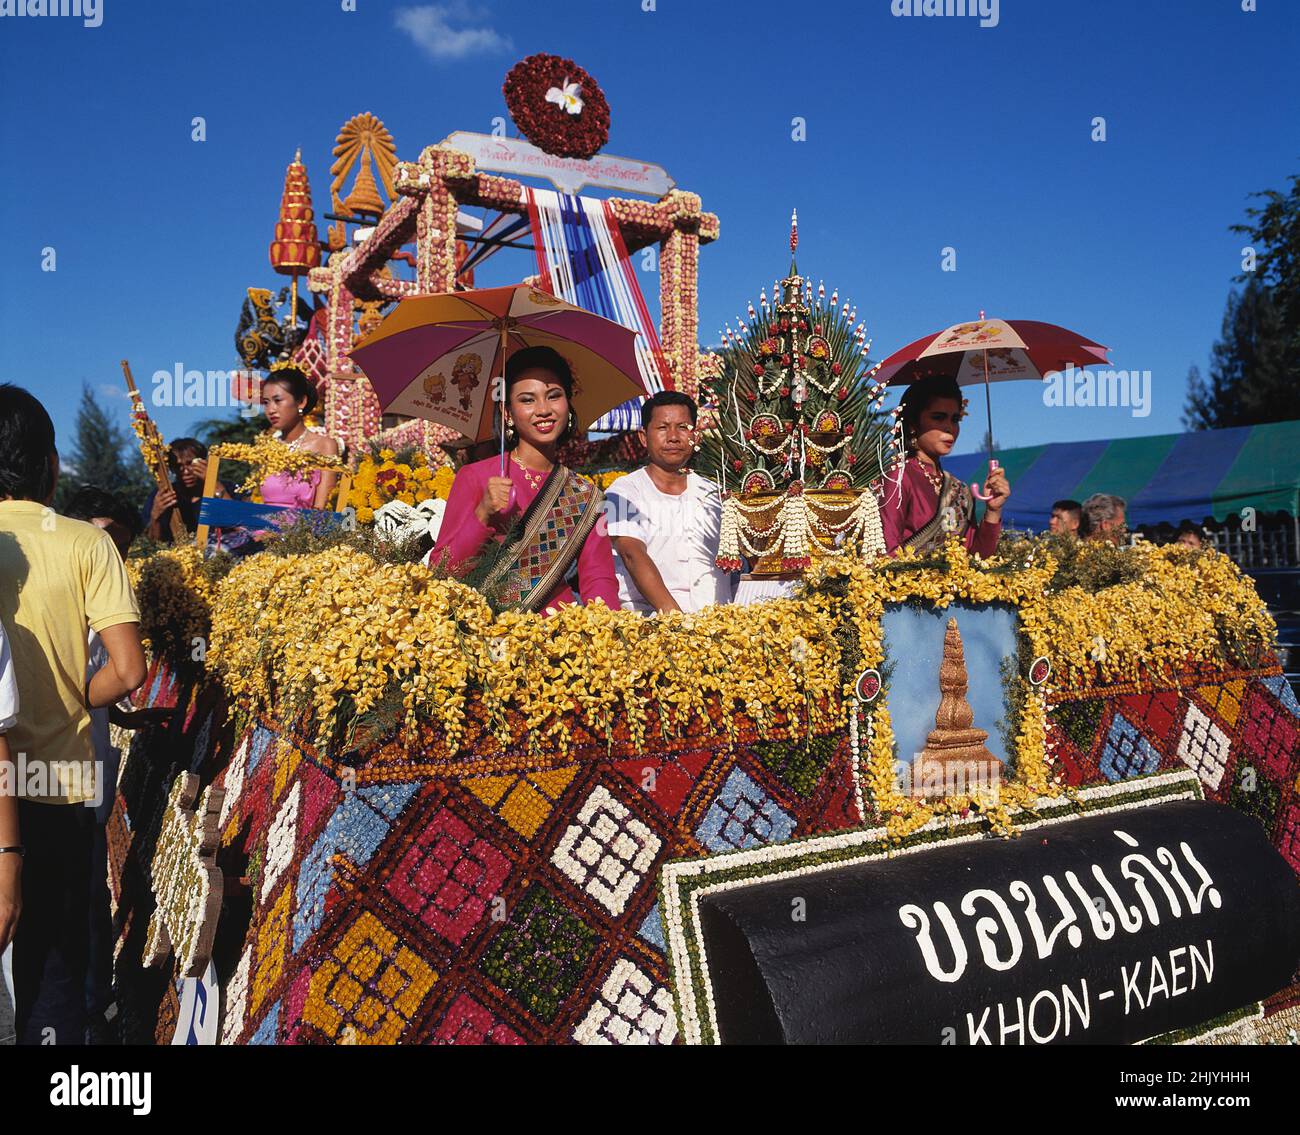 Thailand. Bangkok. Flower festival. Thai men and women on carnival float. Stock Photo